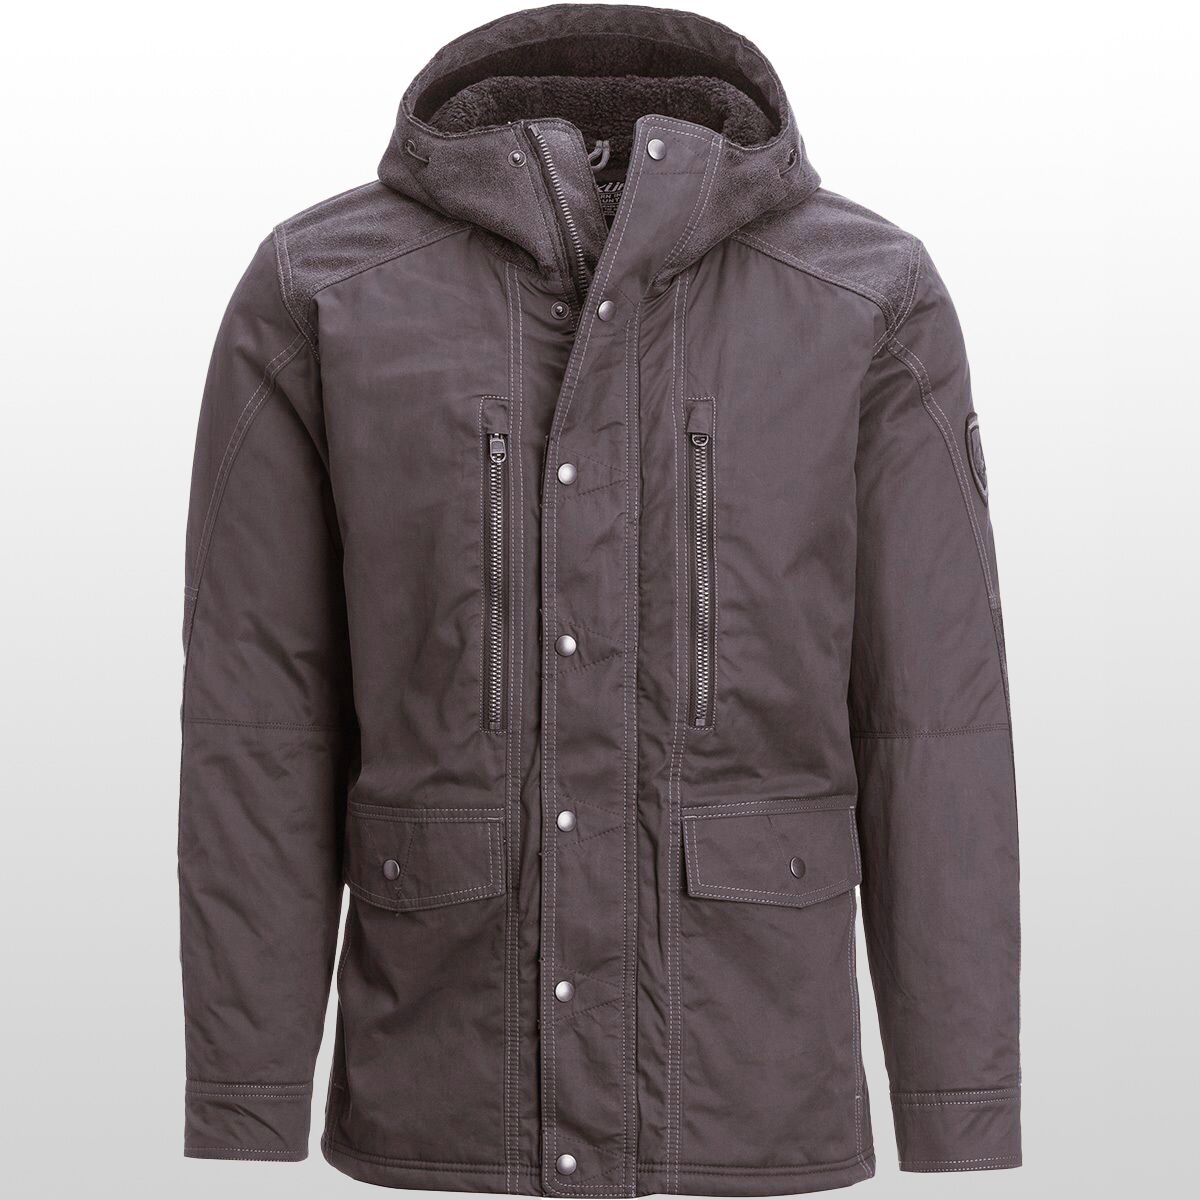 KUHL Arktik Jacket - Men's - Clothing